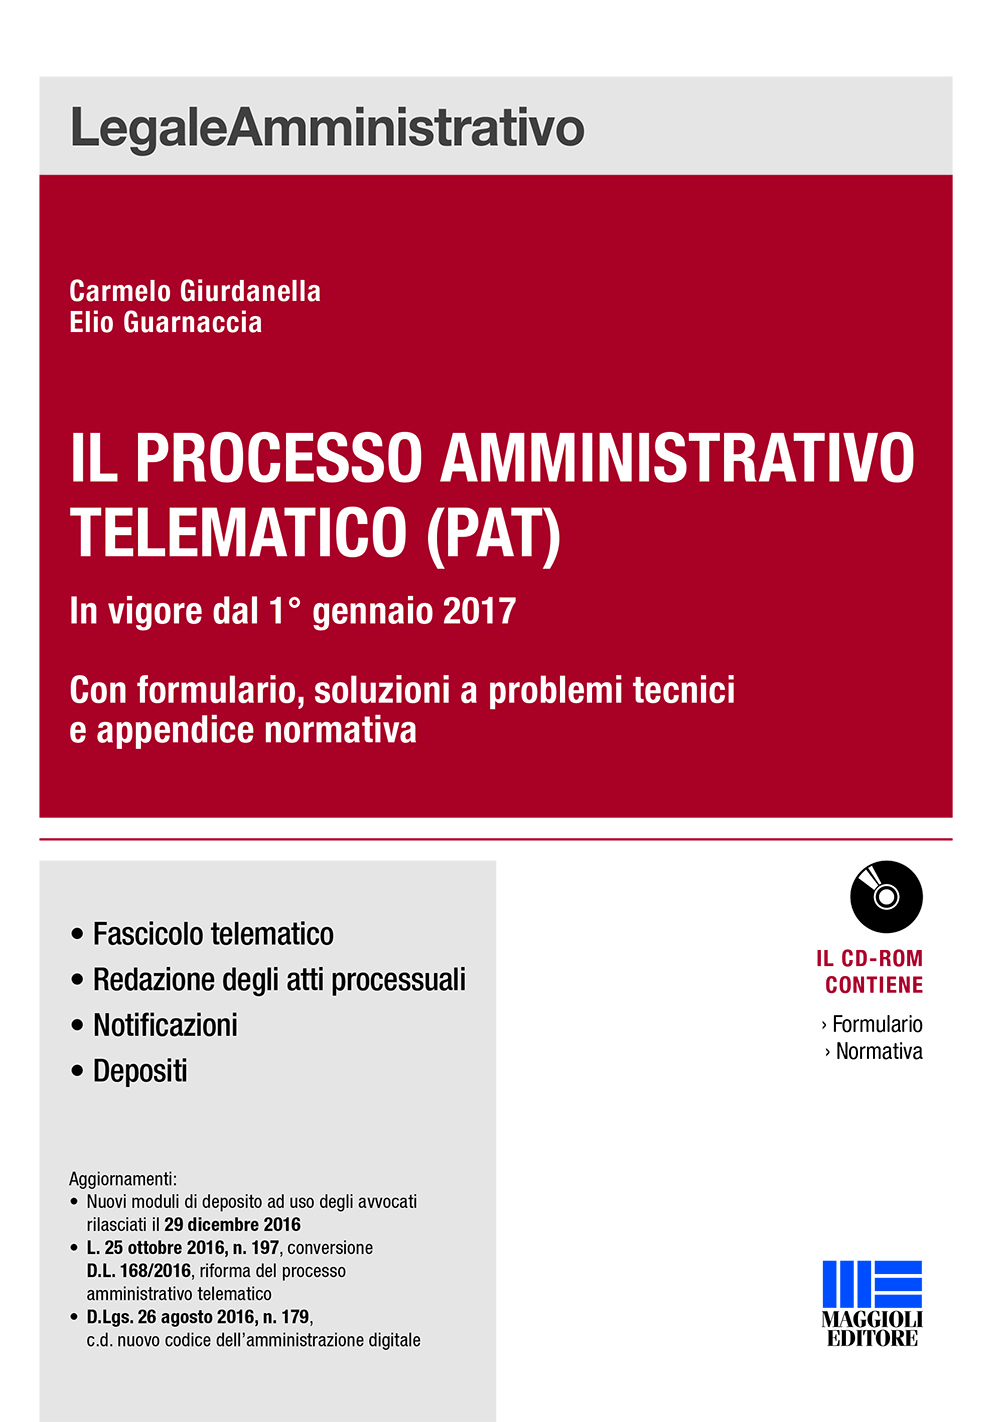 Il processo amministrativo telematico (PAT)